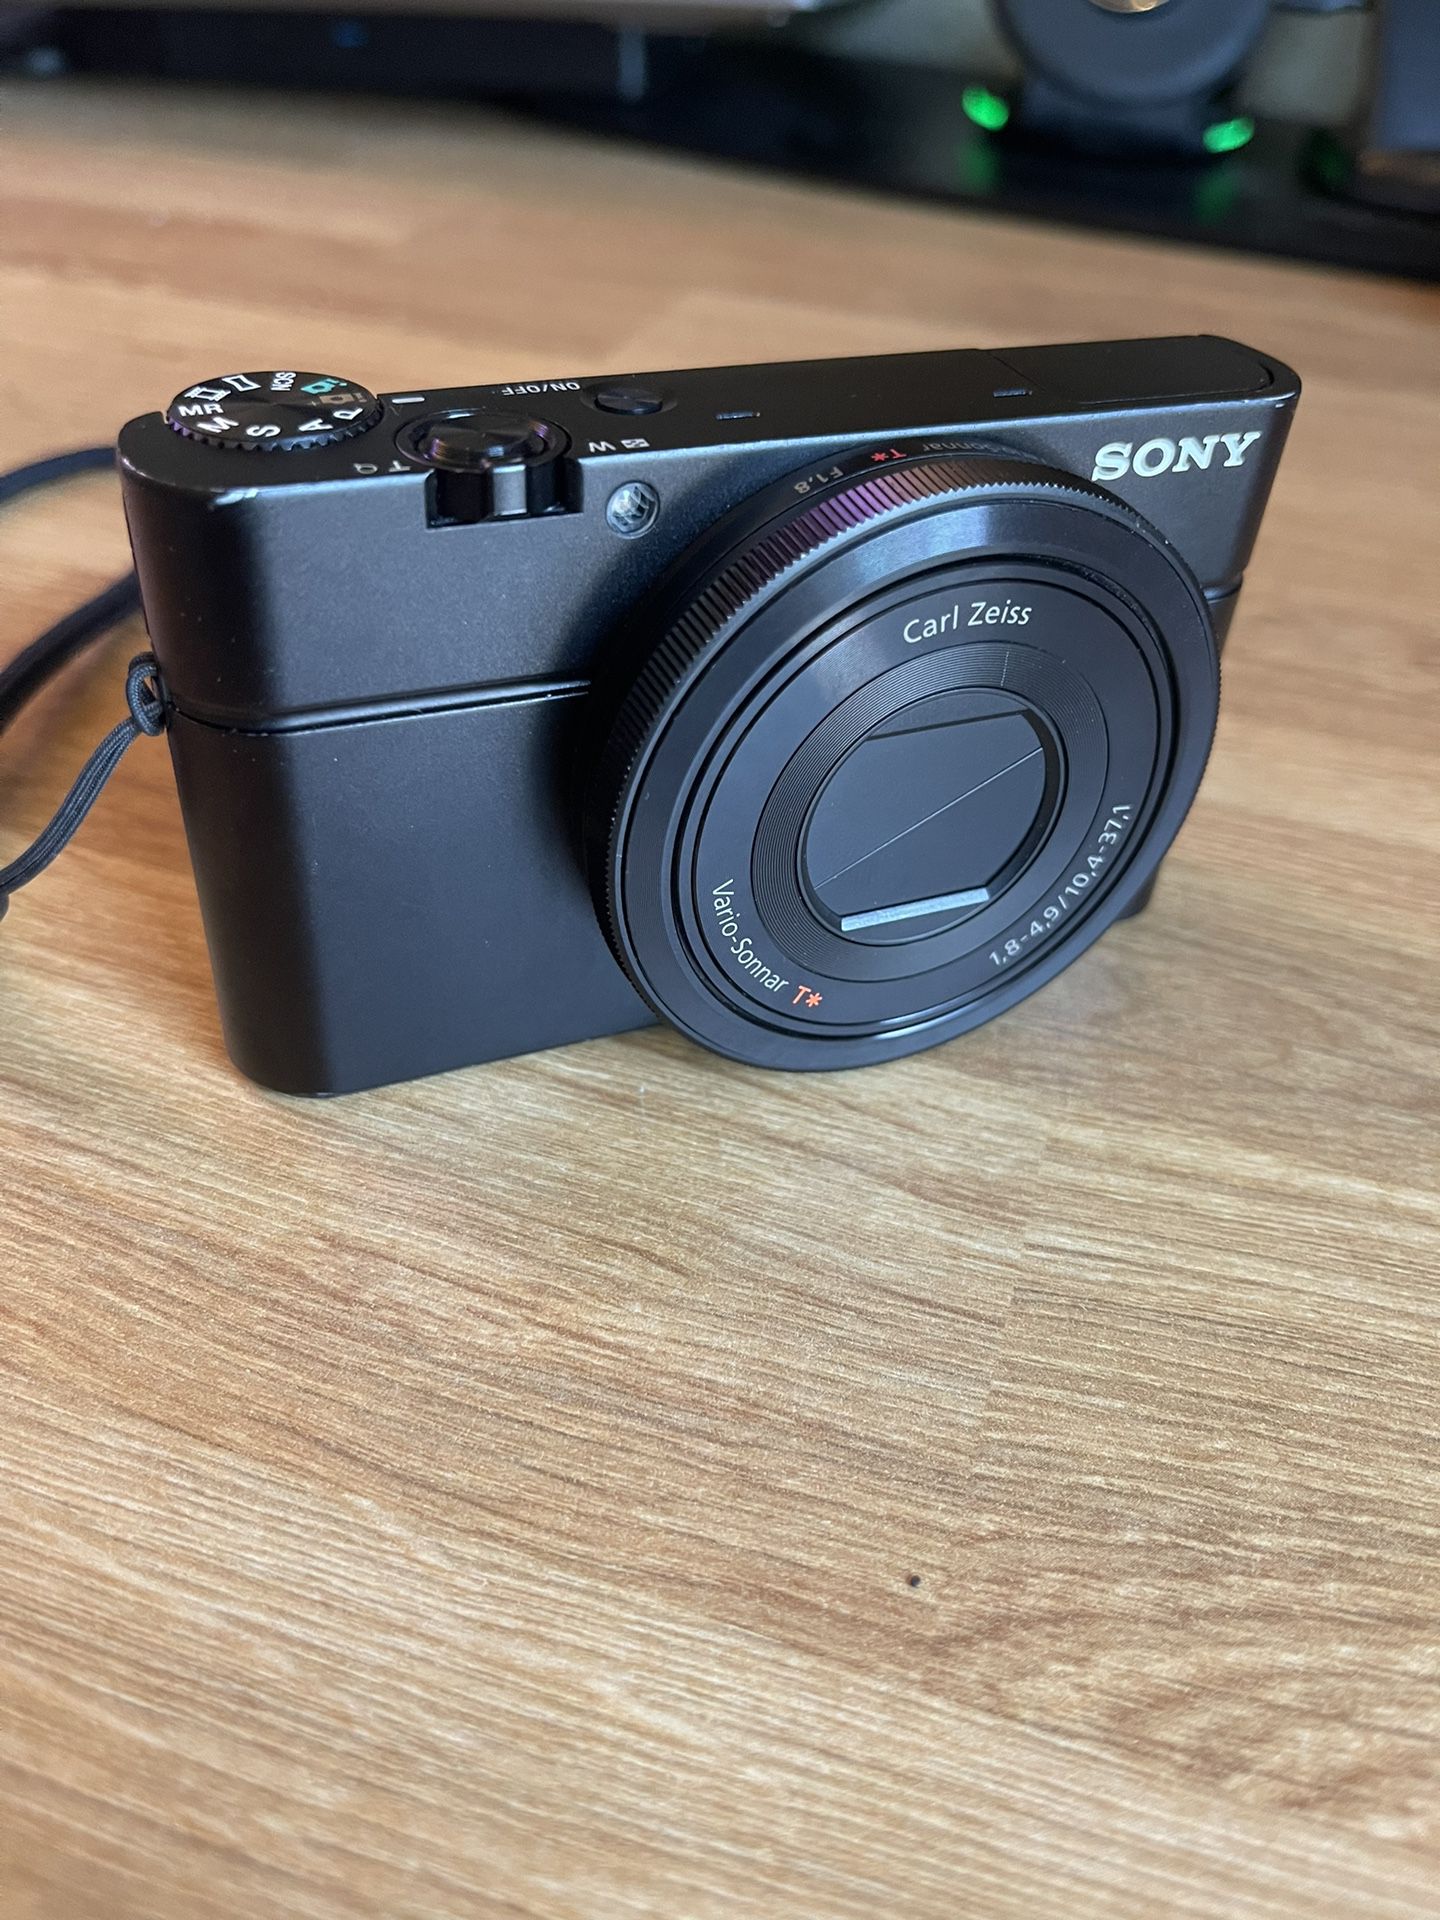 Sony DSC-RX100 Digital Camera 1.0-inch sensor with F1.8 lens Black Cyber-shot Digital Camera 